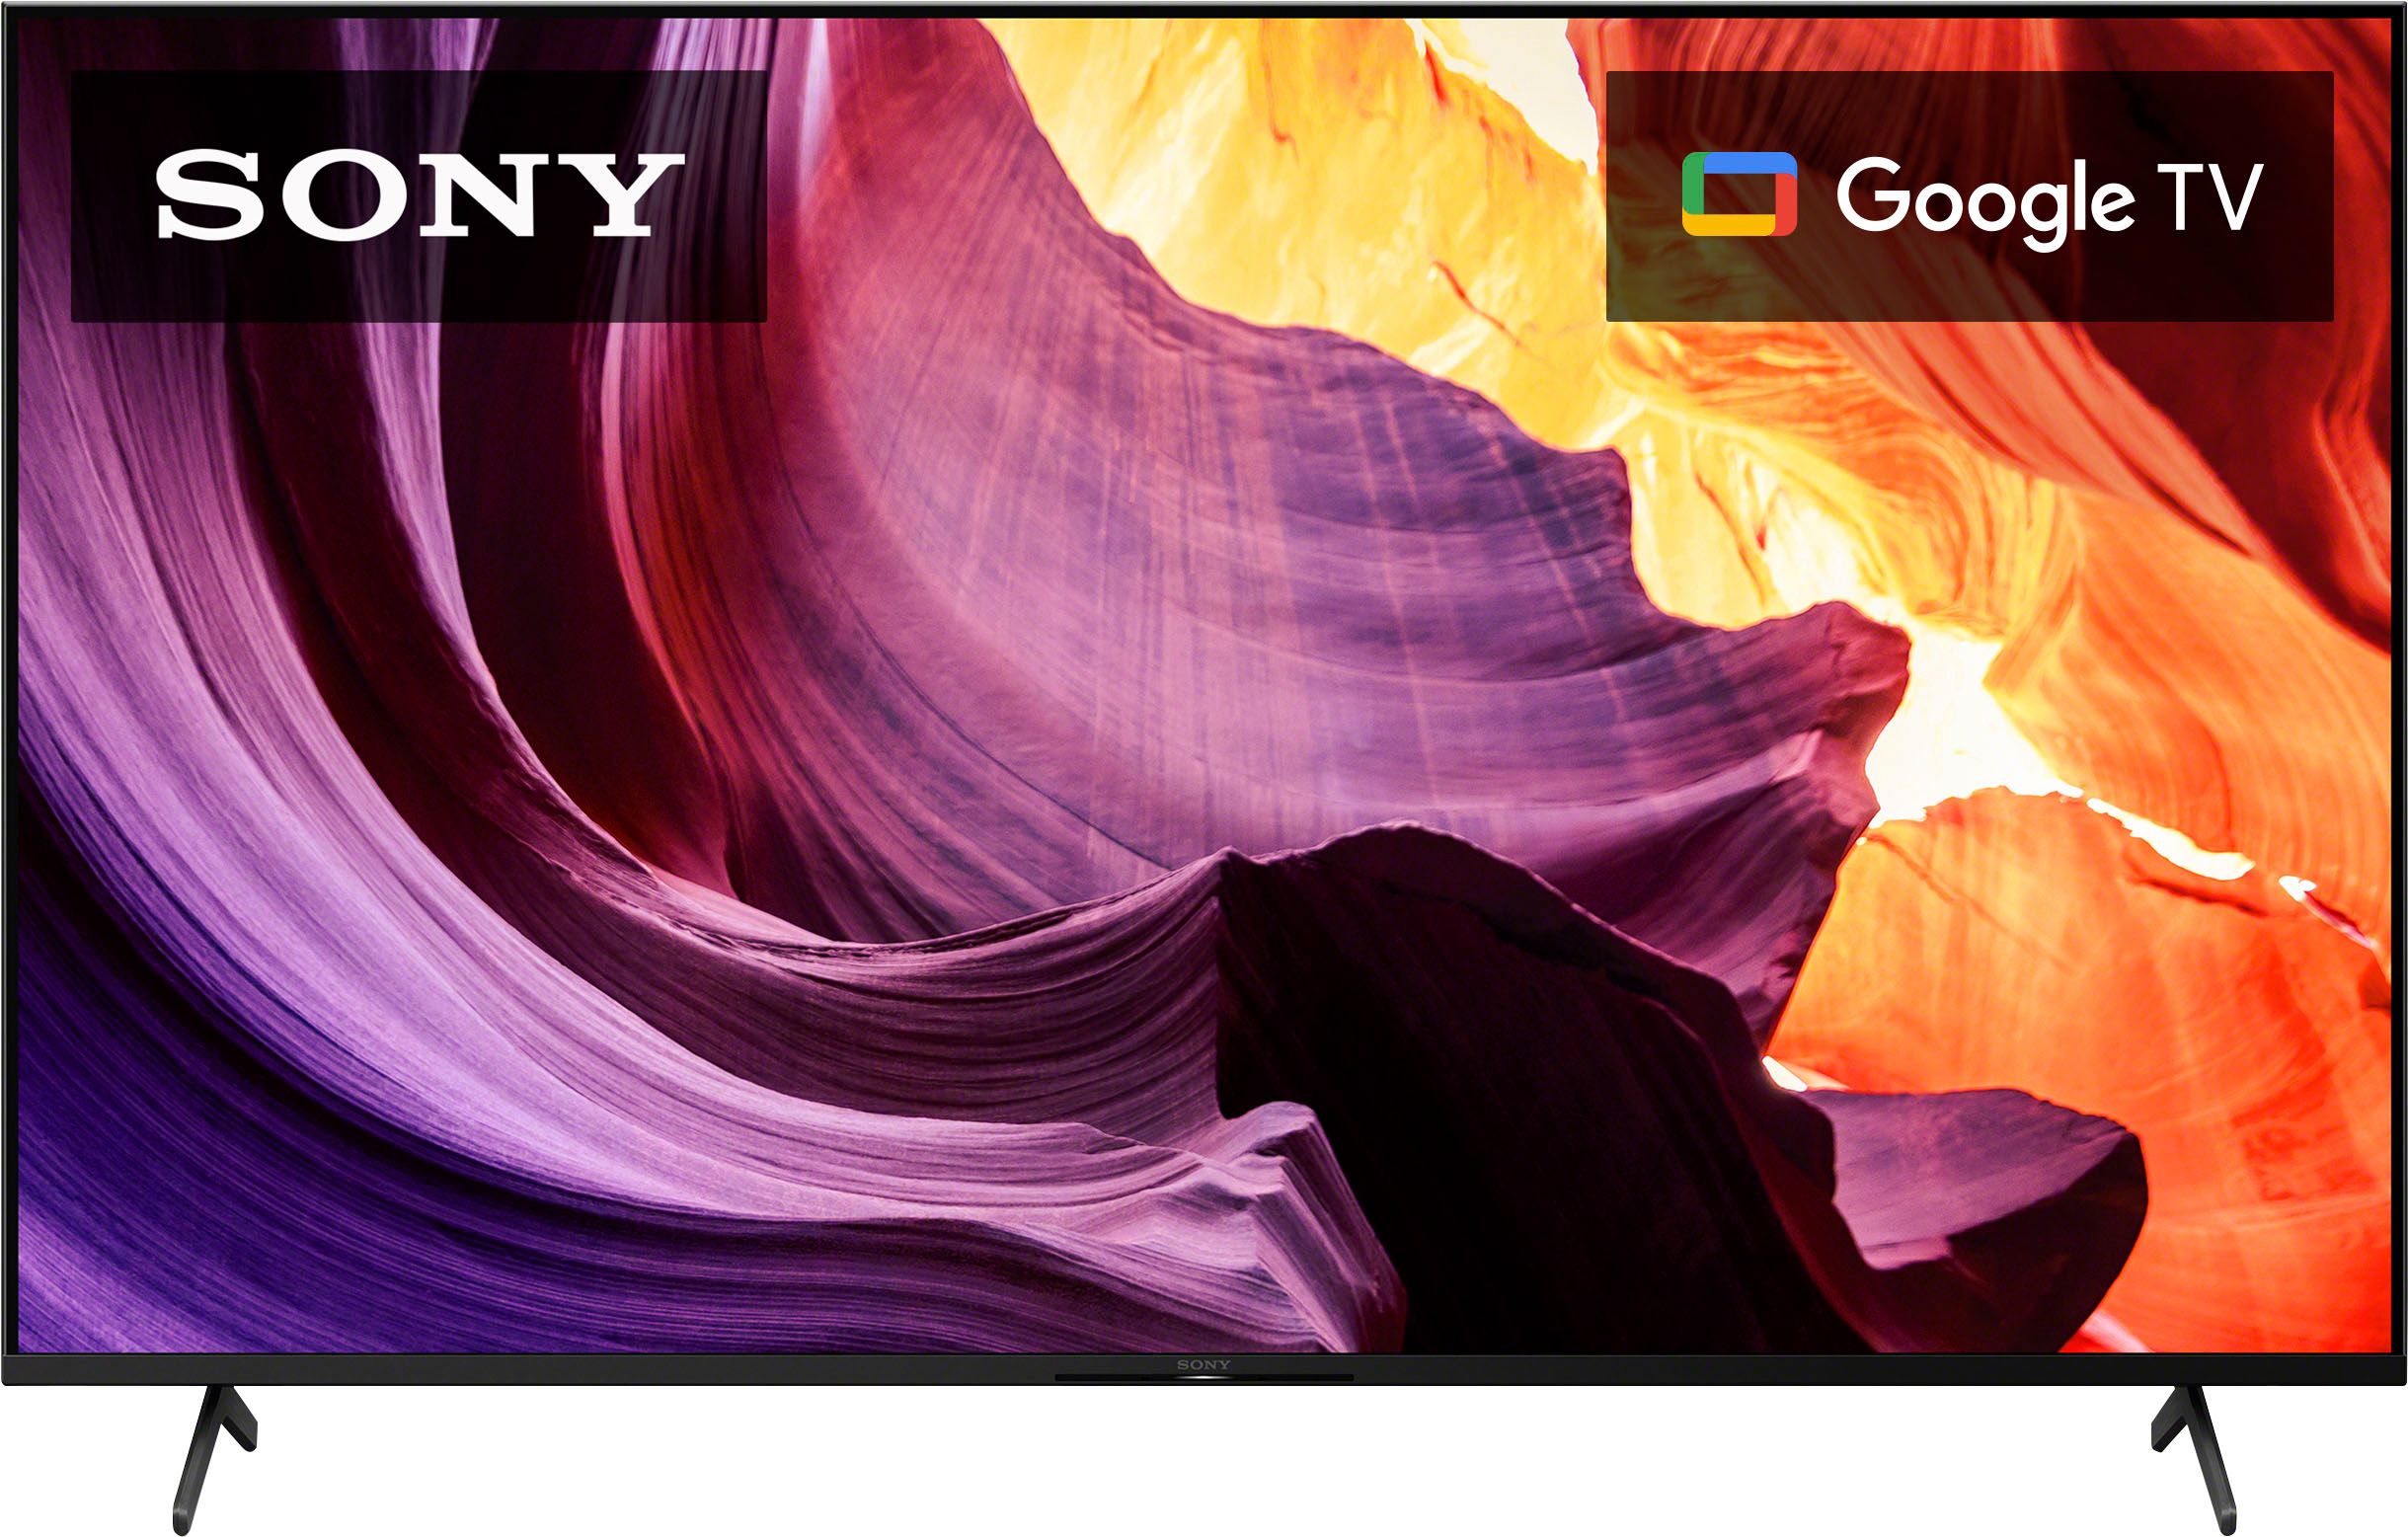 Sony 75" Class X80K Series LED 4K HDR Smart Google TV KD75X80K - Best Buy | Best Buy U.S.